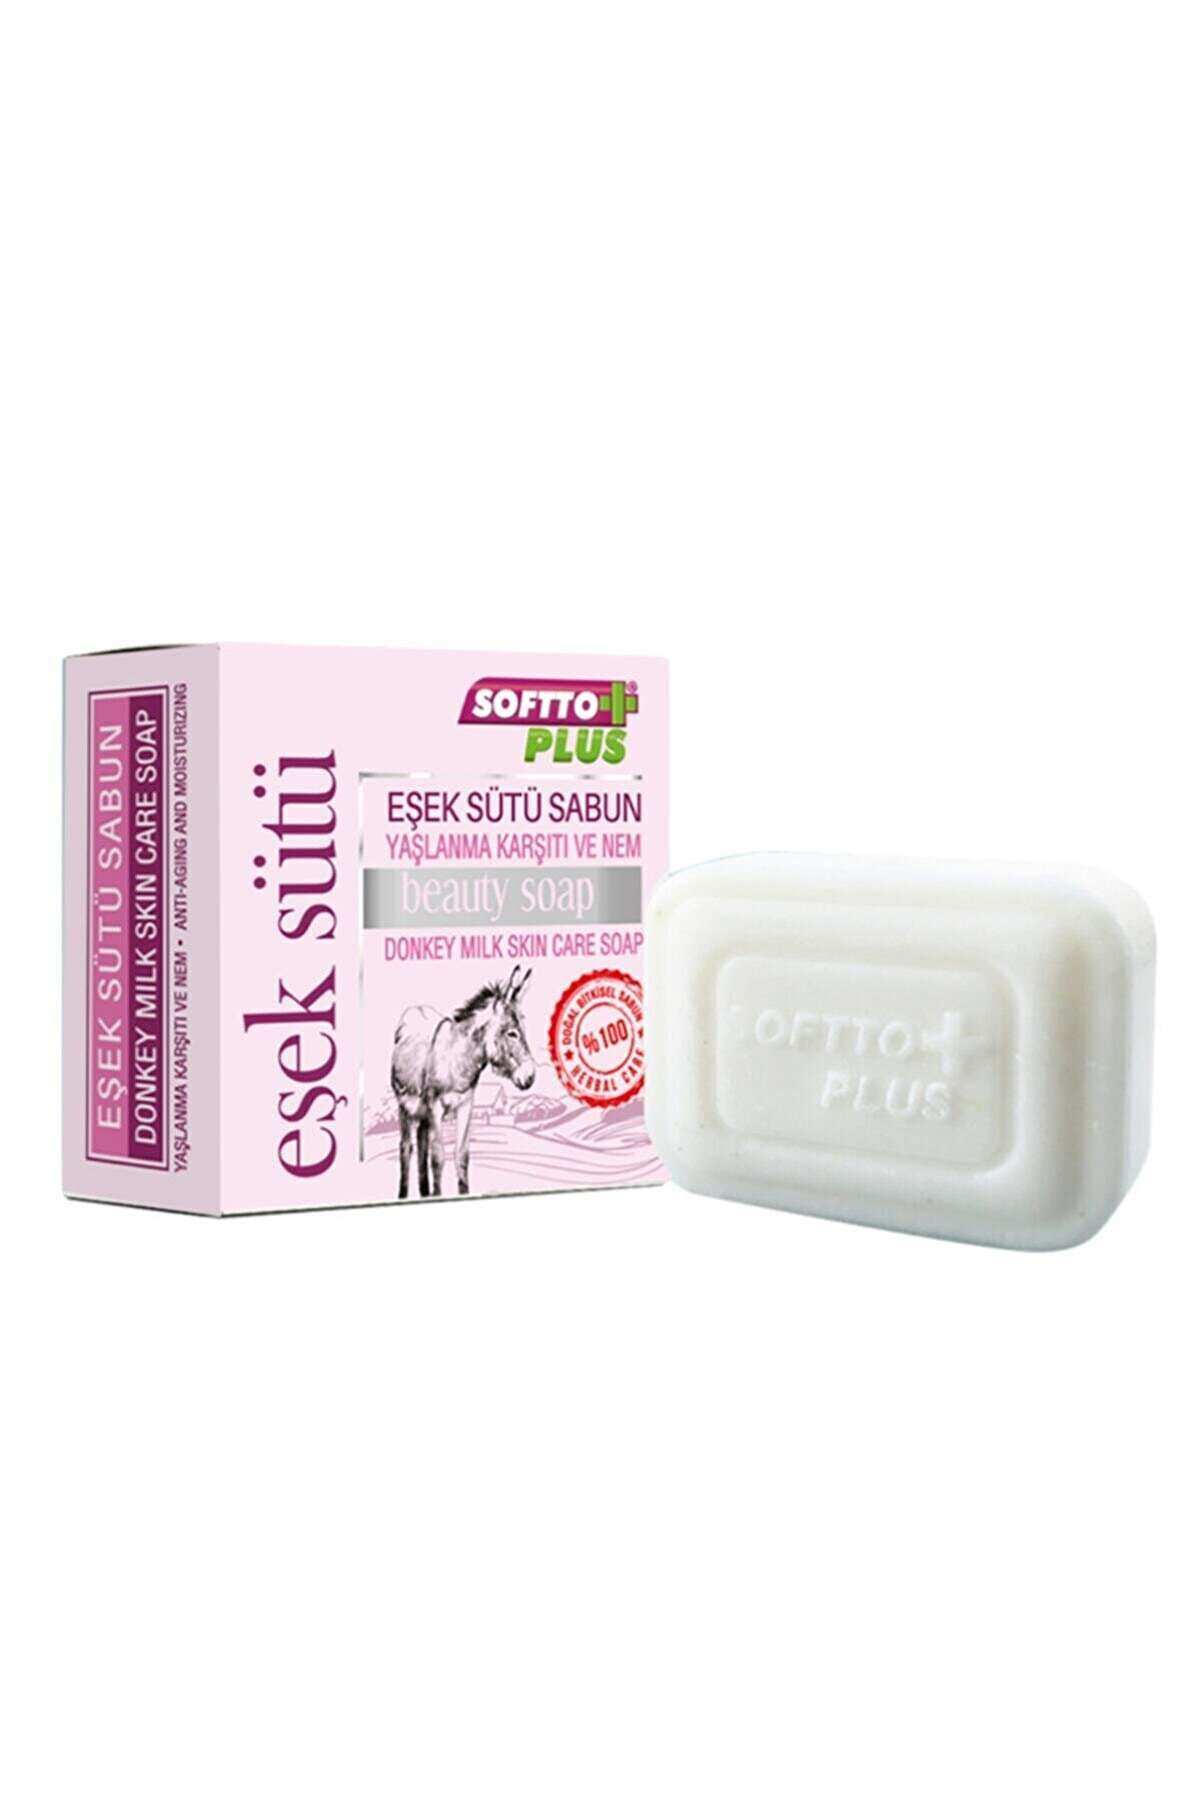 Softto Plus Eşek Sütlü Sabun 100 g.